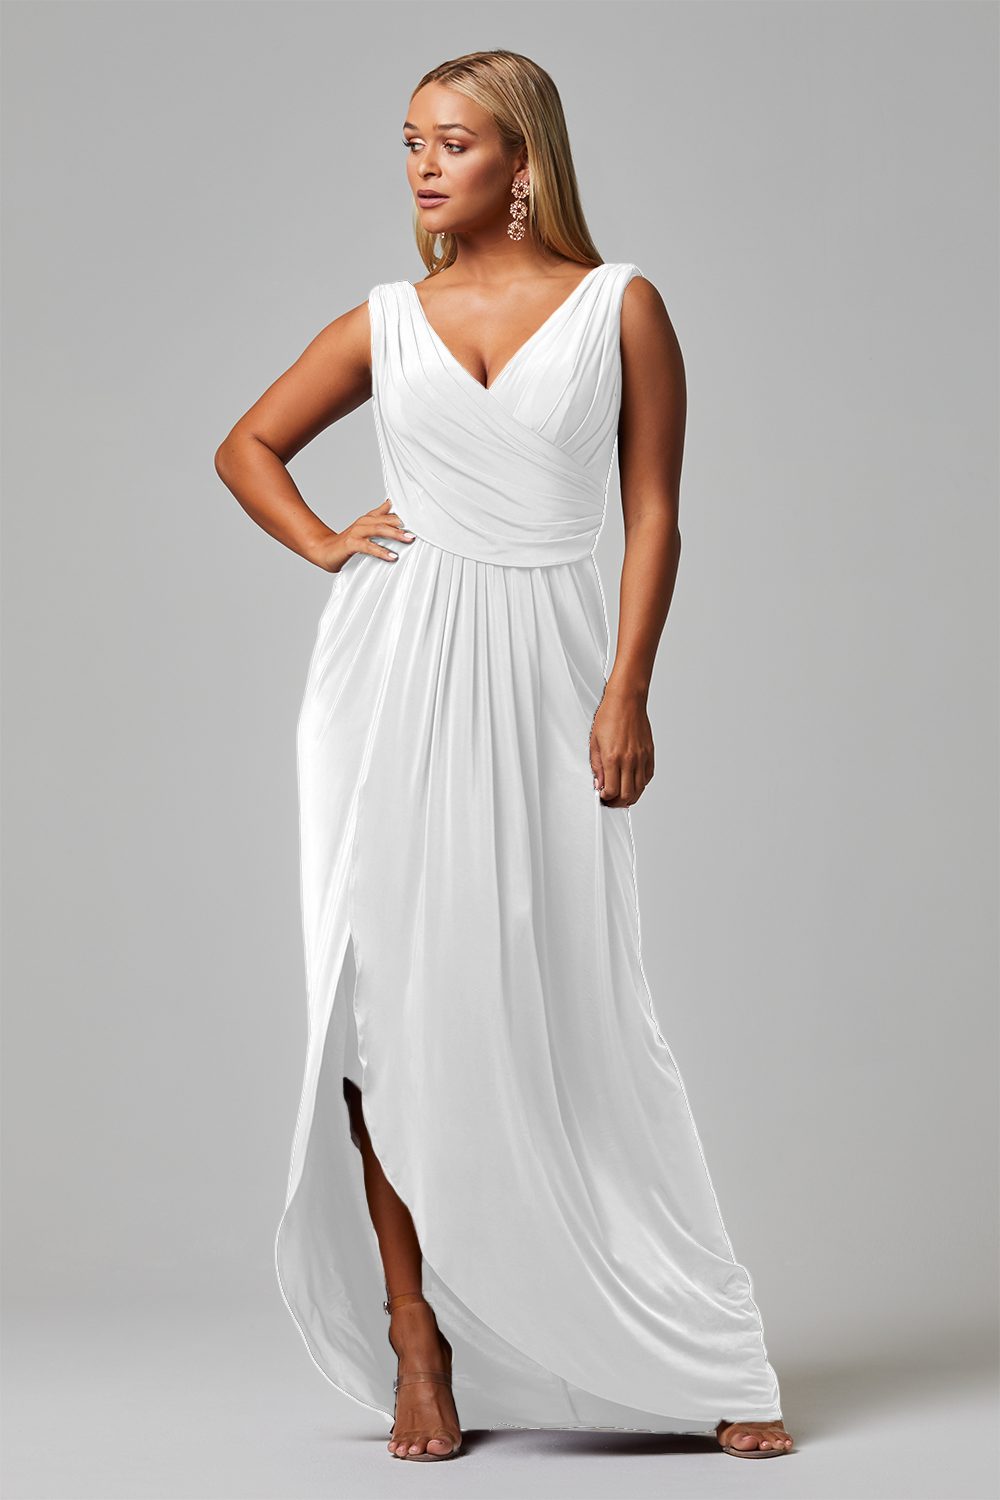 Kalani Dress By Tania Olsen Sizes 20 - 30 TO817 - ElissaJay Boutique